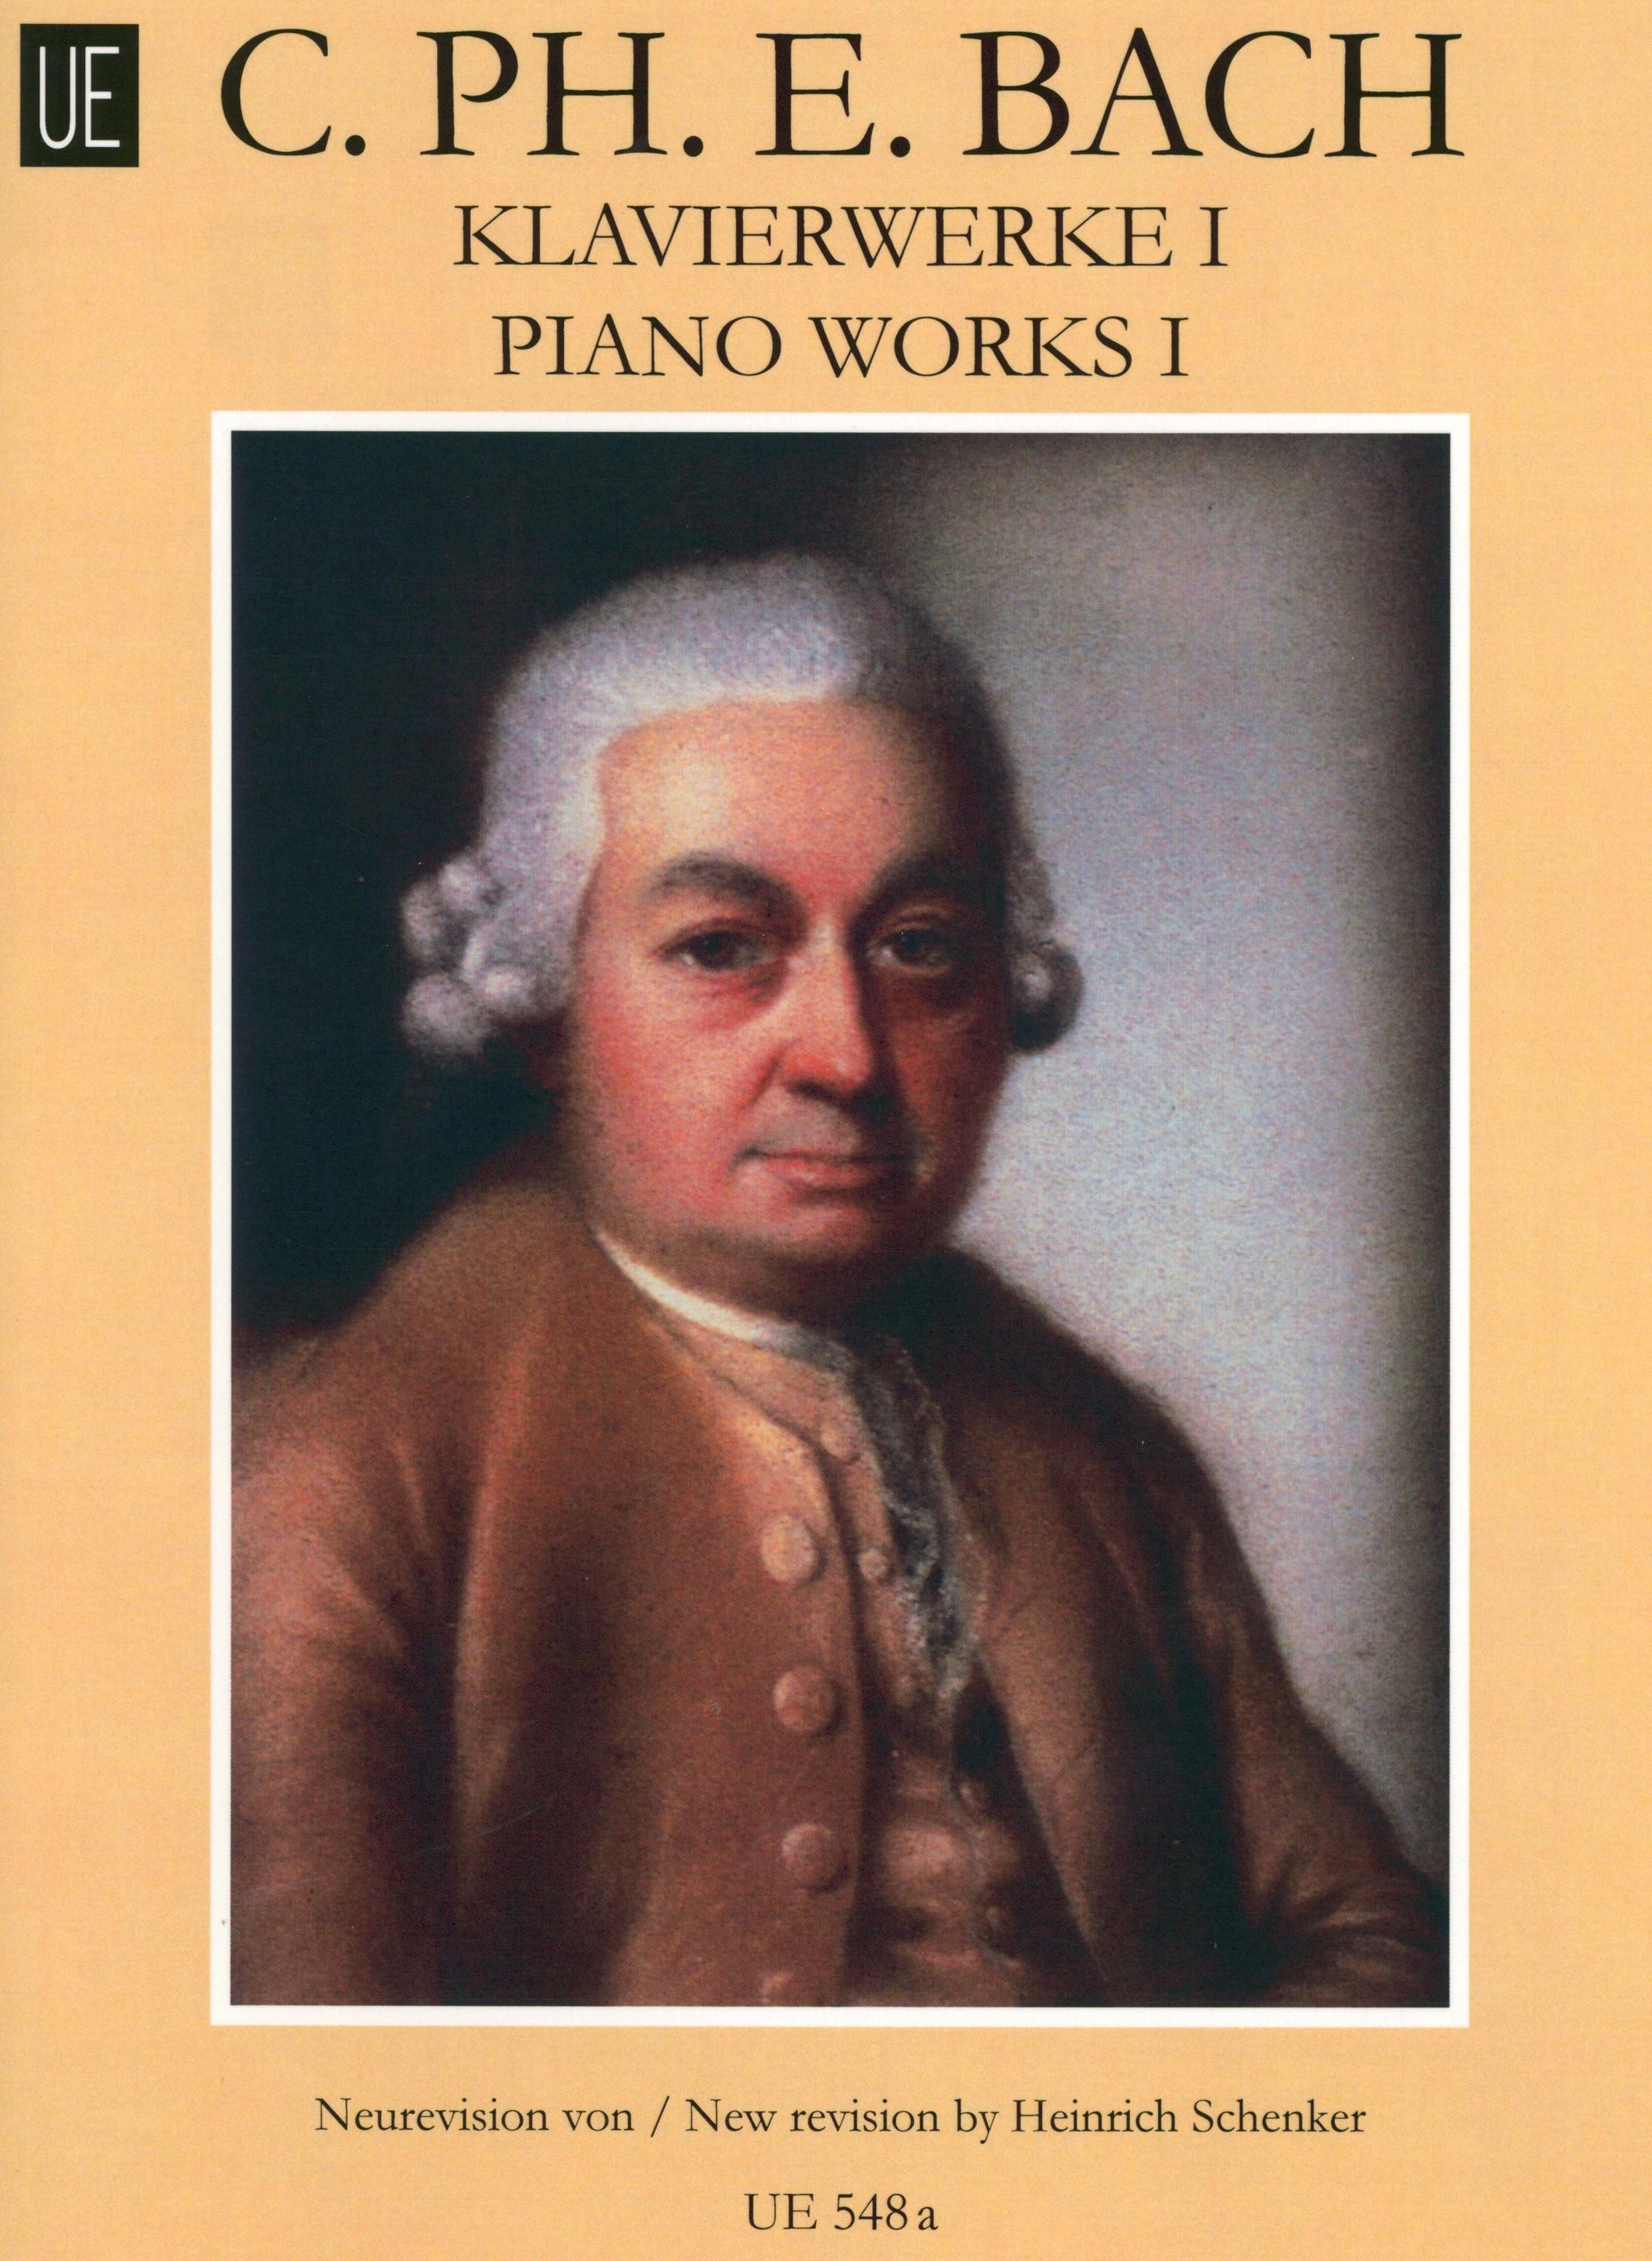 C.P.E. Bach: Piano Works - Volume 1